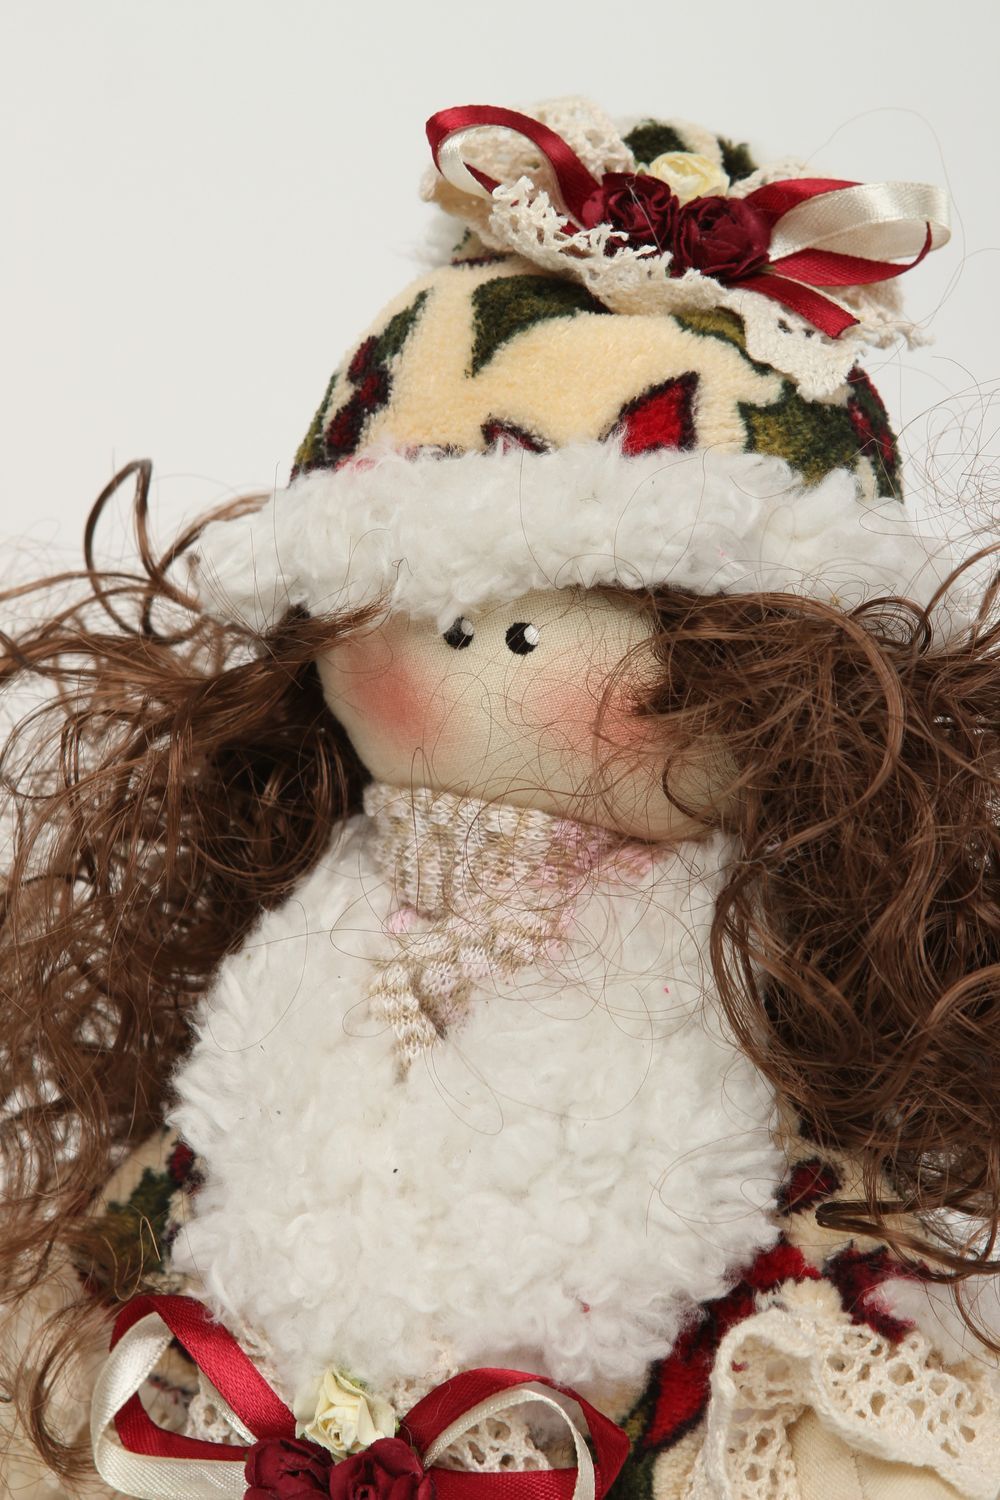 Handmade doll handmade rag doll interior dolls soft toys for children baby gift photo 3